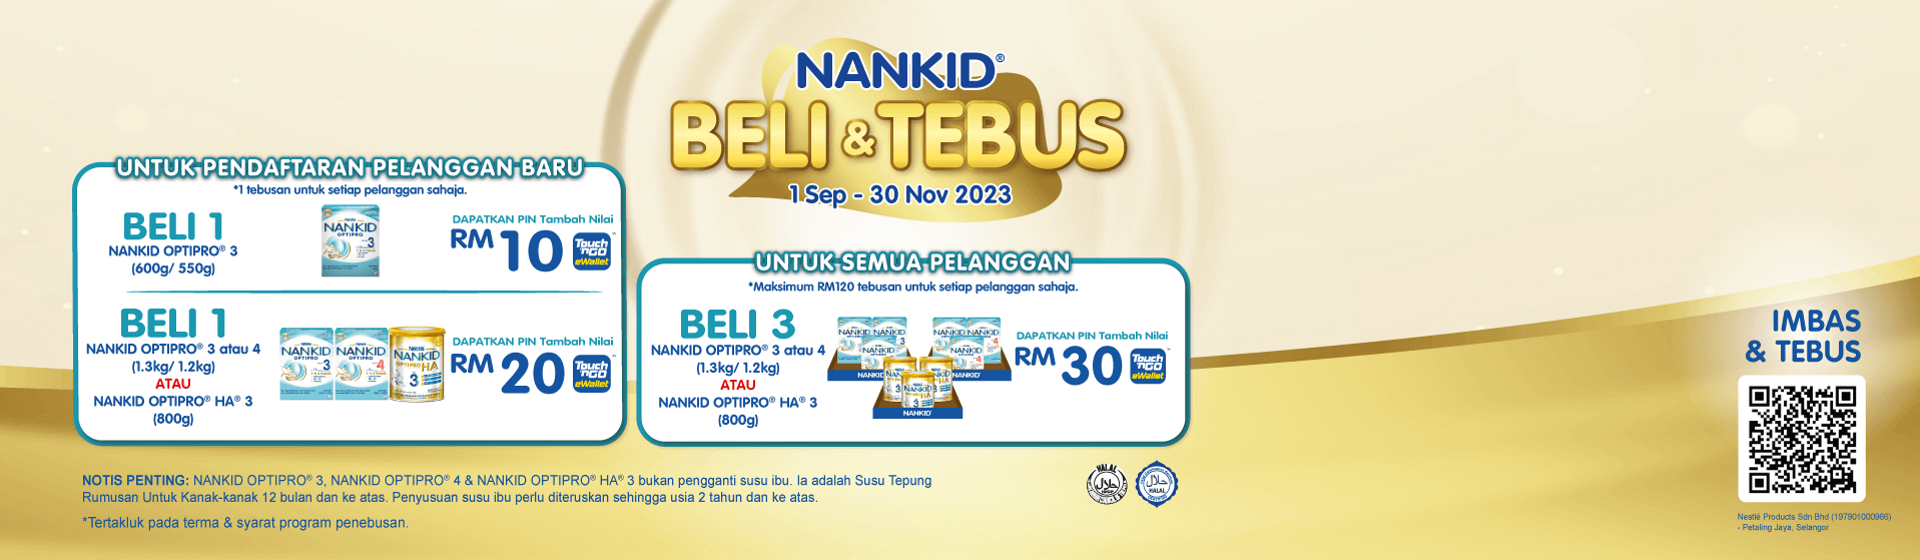 nankid-beli-tebus-homepage-banner-desktop1